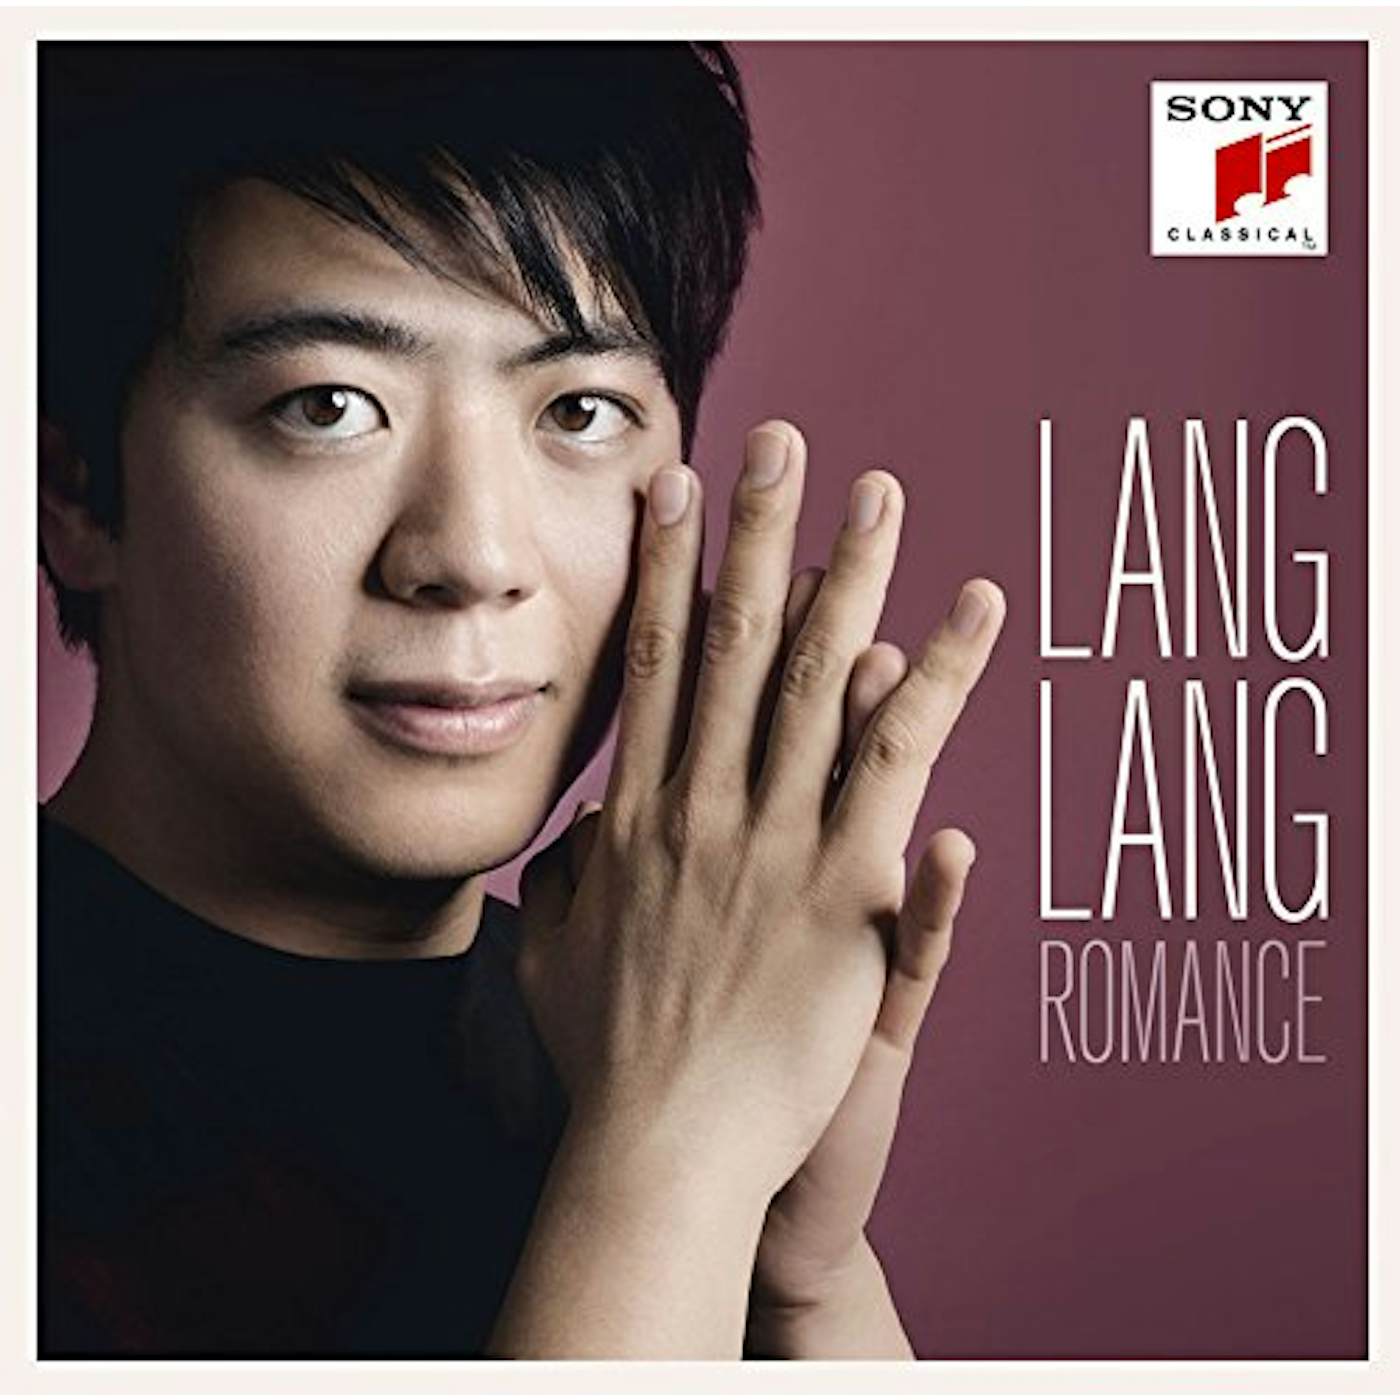 Lang Lang ROMANCE CD